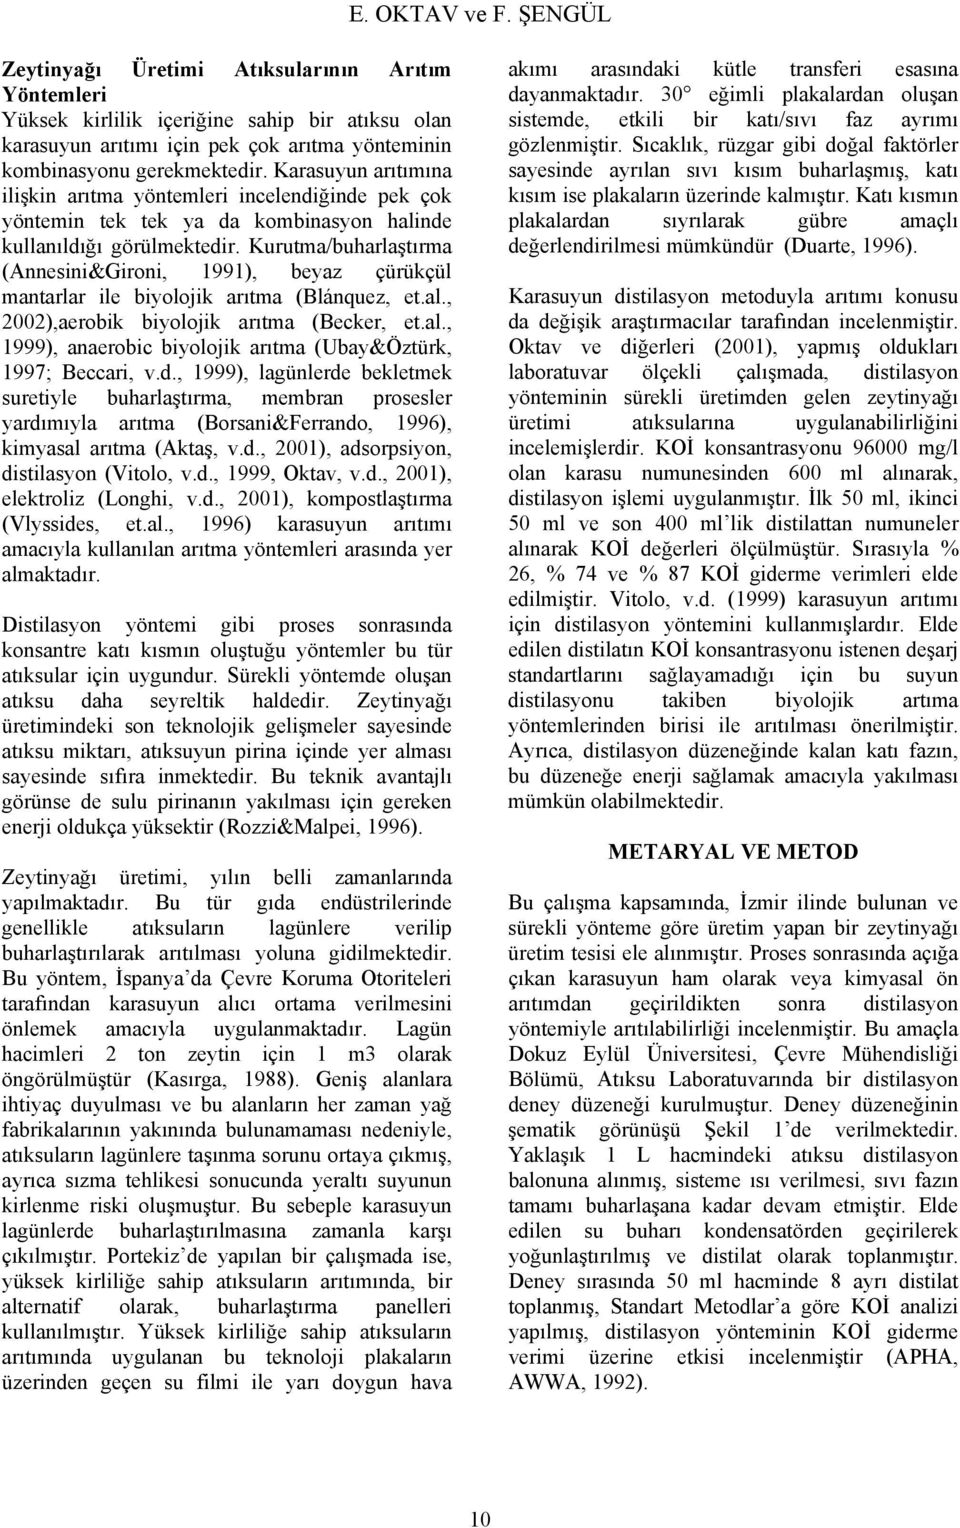 Kurutma/buharlaştırma (Annesini&Gironi, 1991), beyaz çürükçül mantarlar ile biyolojik arıtma (Blánquez, et.al., 22),aerobik biyolojik arıtma (Becker, et.al., 1999), anaerobic biyolojik arıtma (Ubay&Öztürk, 1997; Beccari, v.